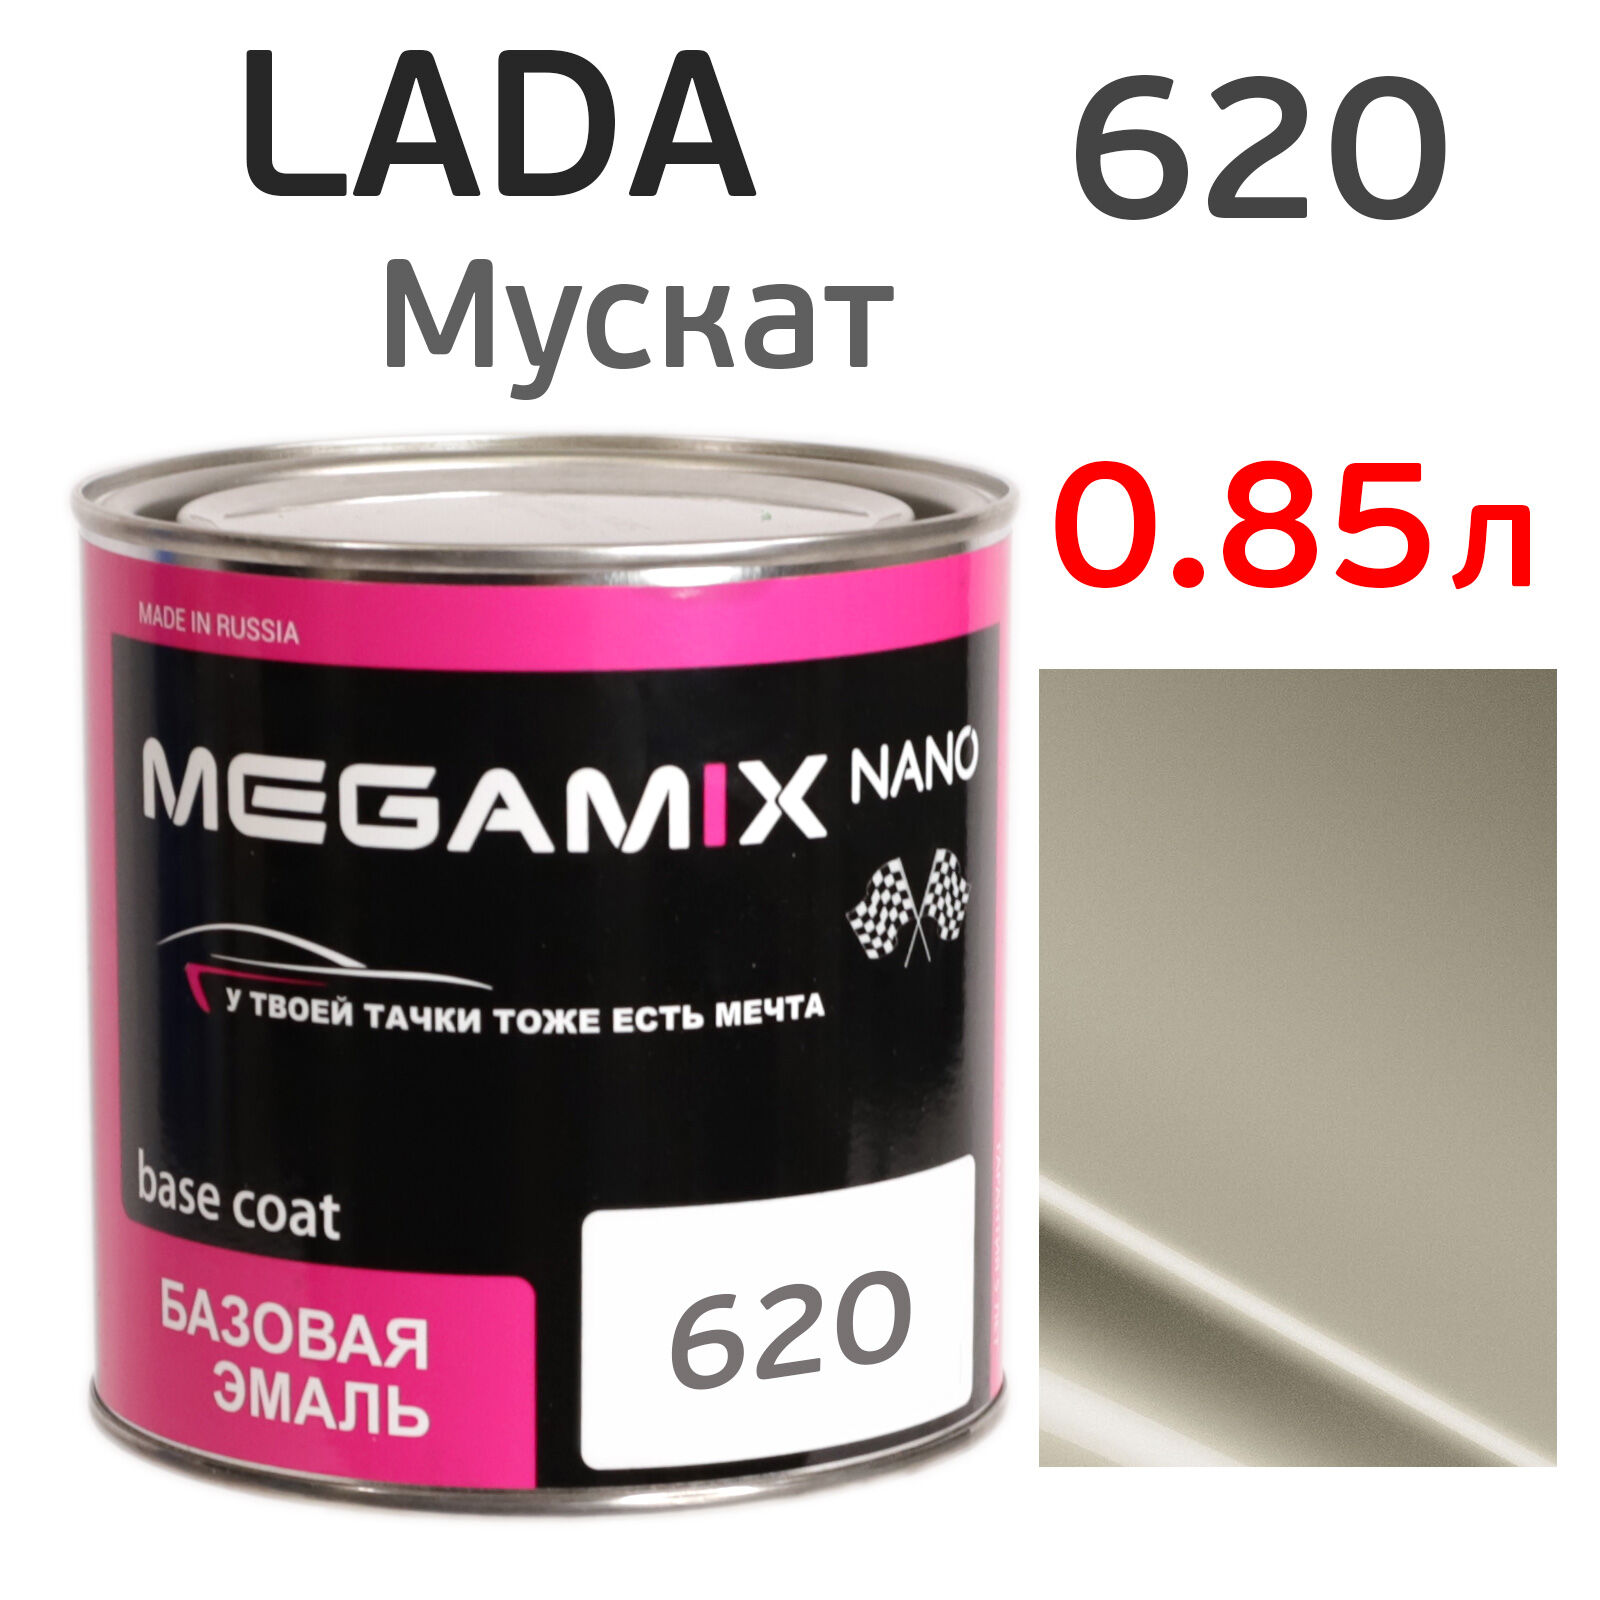 Автоэмаль MegaMIX (0.85л) Lada 620 Мускат, металлик, базисная эмаль под лак